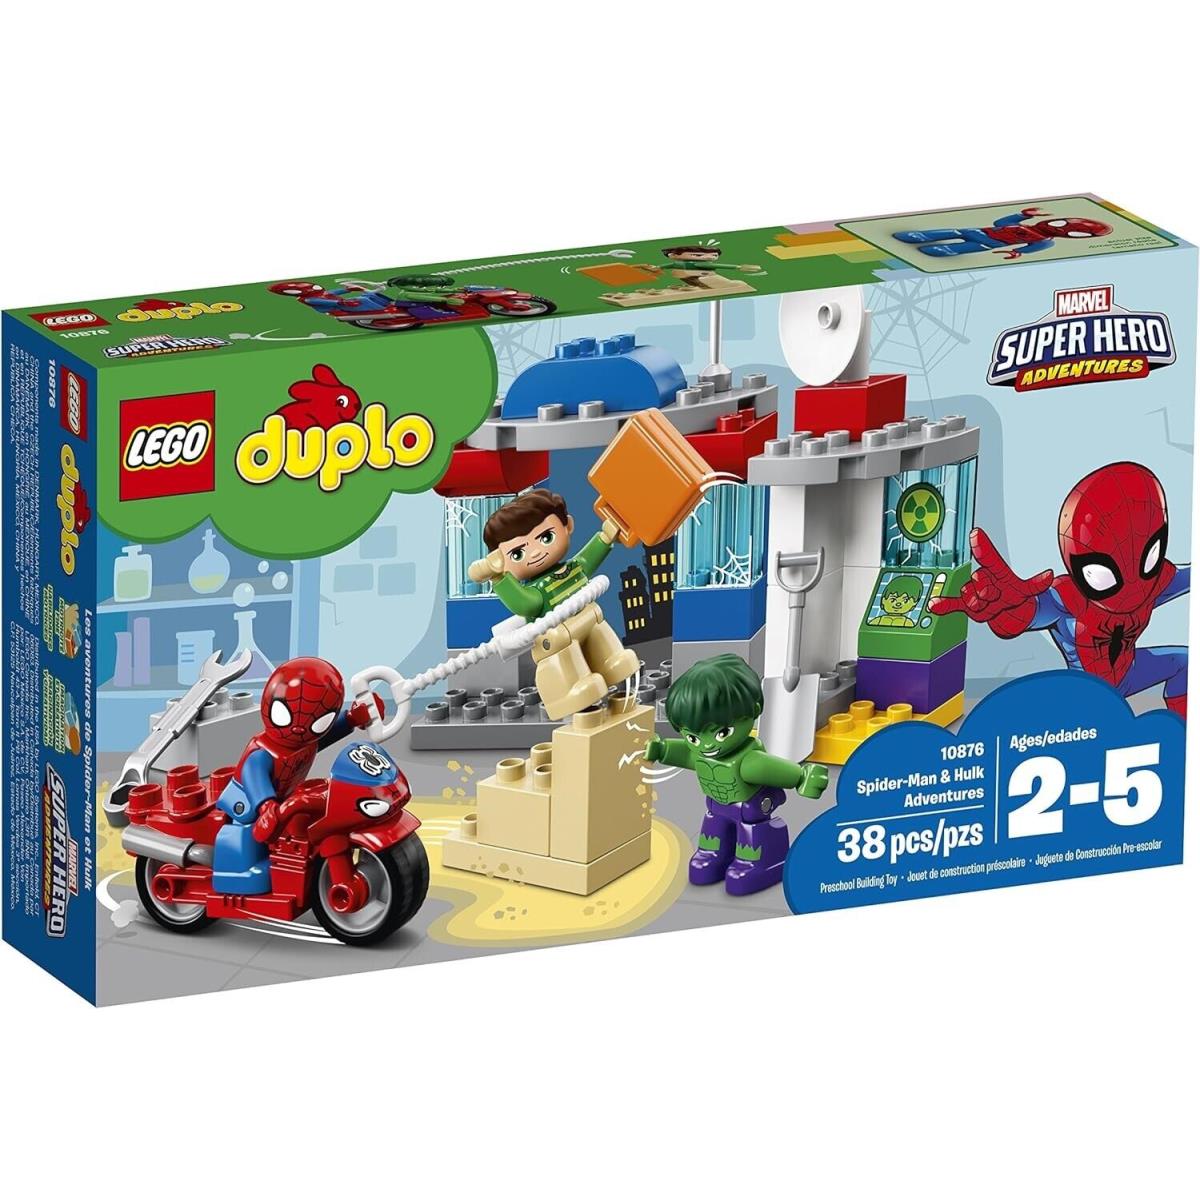 Lego Duplo: Spider-man Hulk Adventures 10876